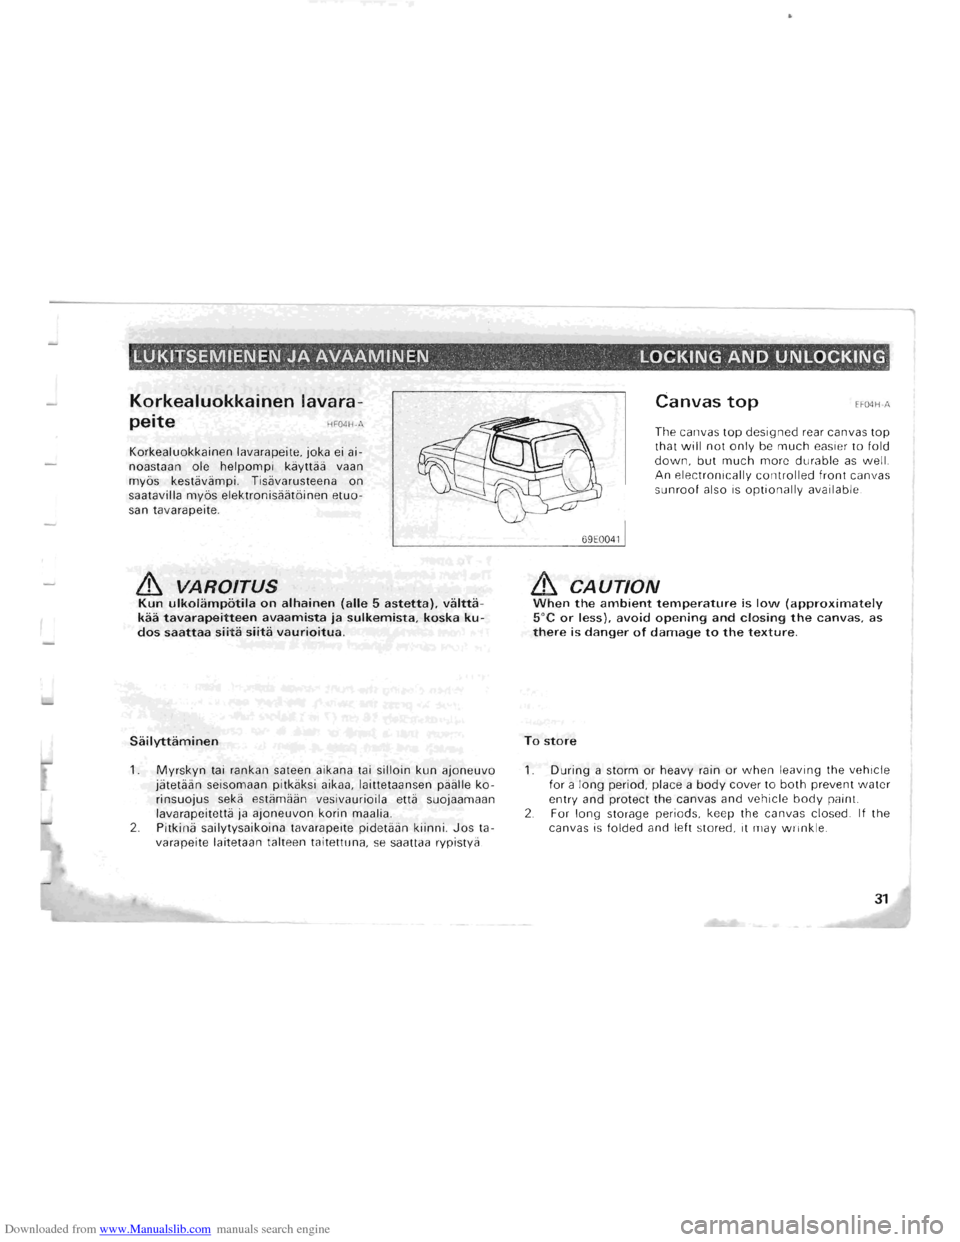 MITSUBISHI PAJERO 1996 2.G Owners Manual Downloaded from www.Manualslib.com manuals search engine LUKITSEMIENEN JA AVAAMINEN LOCKING AND UNLOCKING " (¥ "  • 
Korkealuokkainen lavara-
peite HFOliH-." 
Korkealuokkainen lavarapeite, joka e